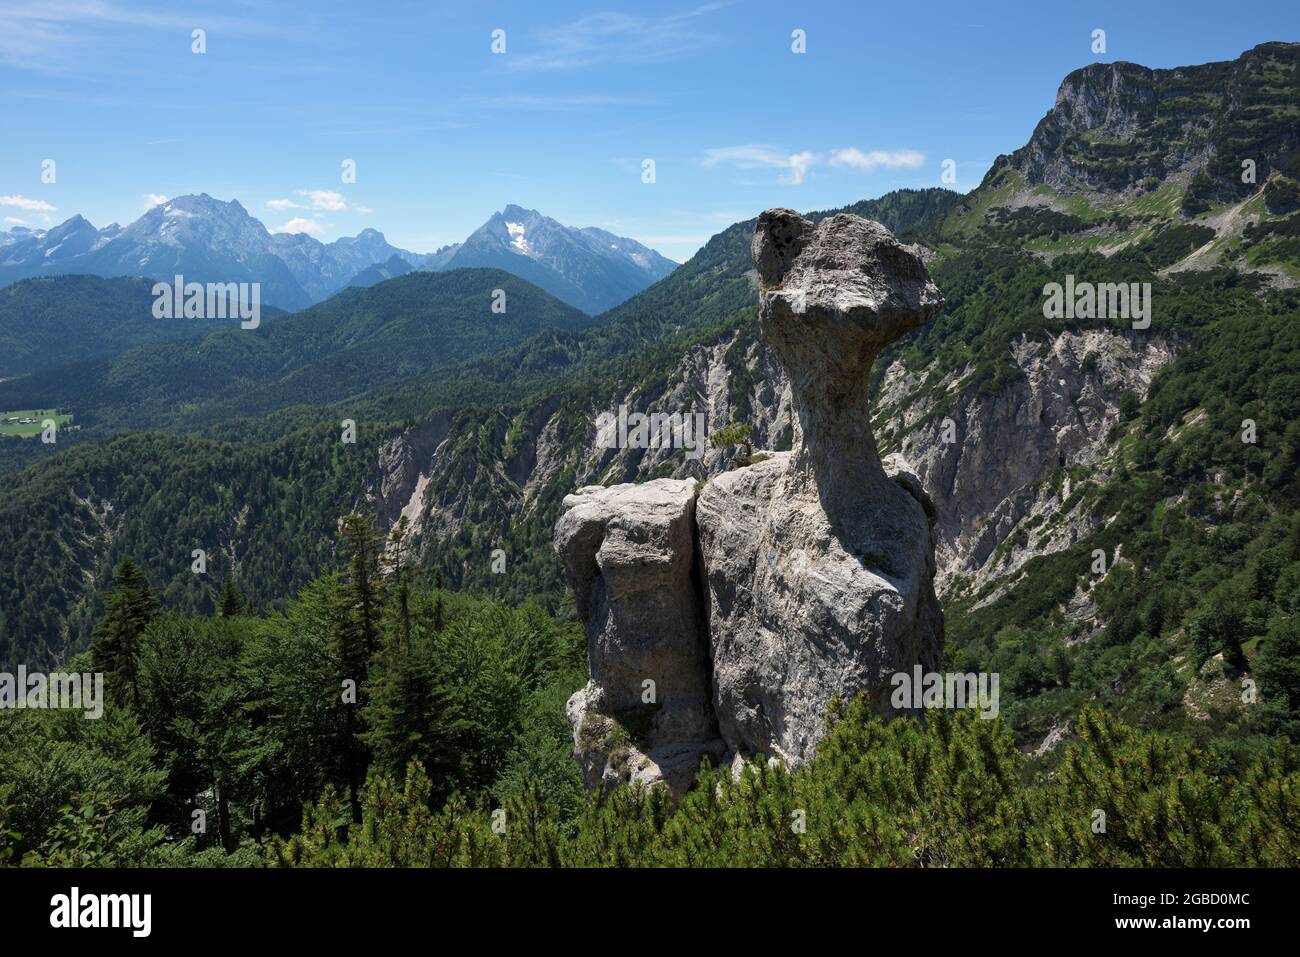 Bizarre rock formation Steinerne Agnes and Blaueisspitze, Hochkalter and Watzmann mountains in the background, Bischofswiesen, Bavaria, Germany Stock Photo